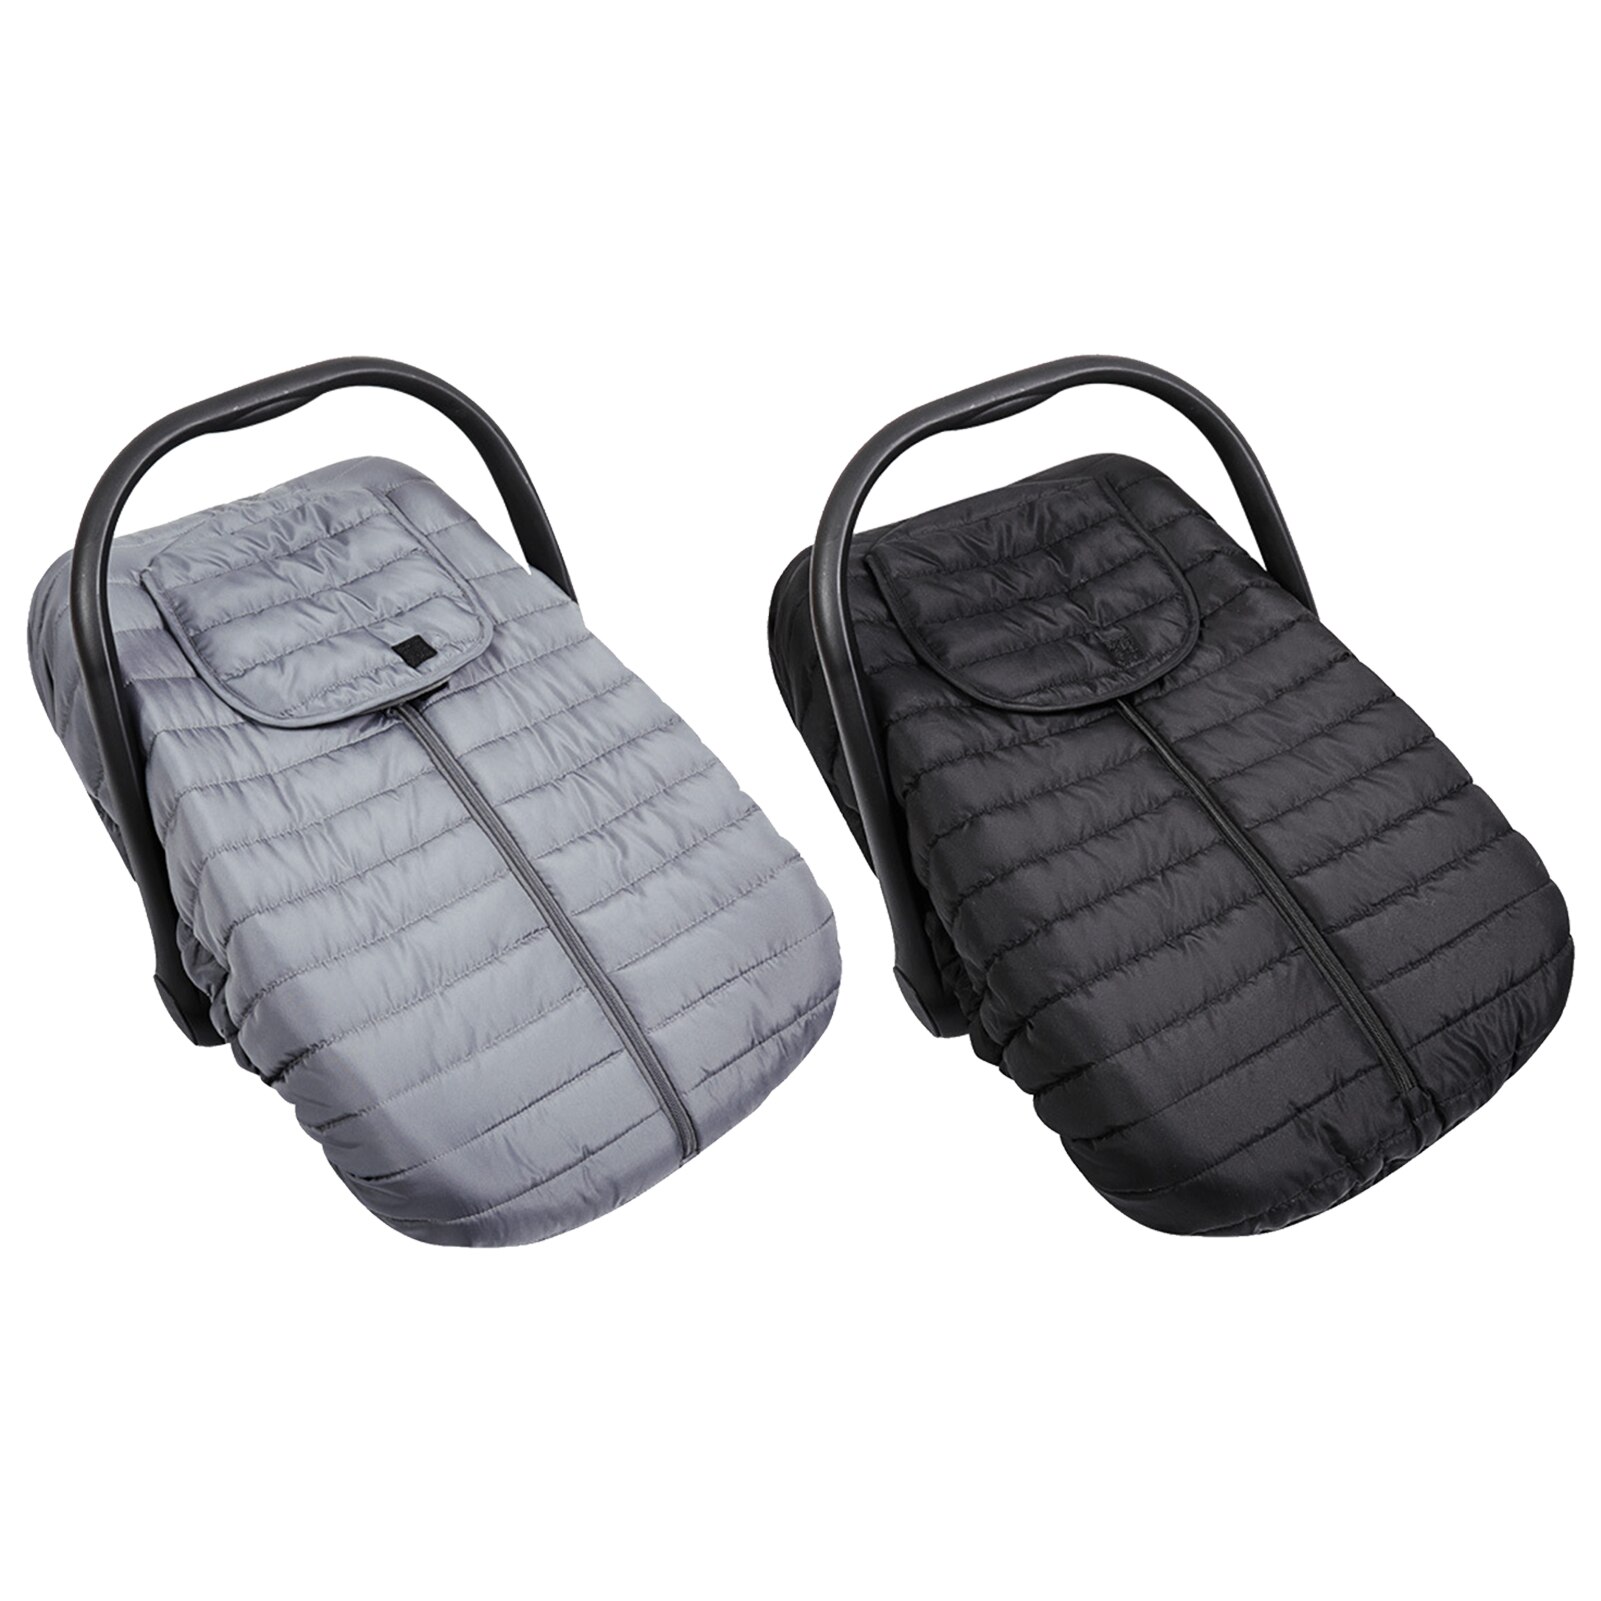 Baby Auto Seat Cover Warm Winter Gezellige Universele Fit Zuigeling Winter Baby Carrier Covers Voor Houden Uw Baby Warm